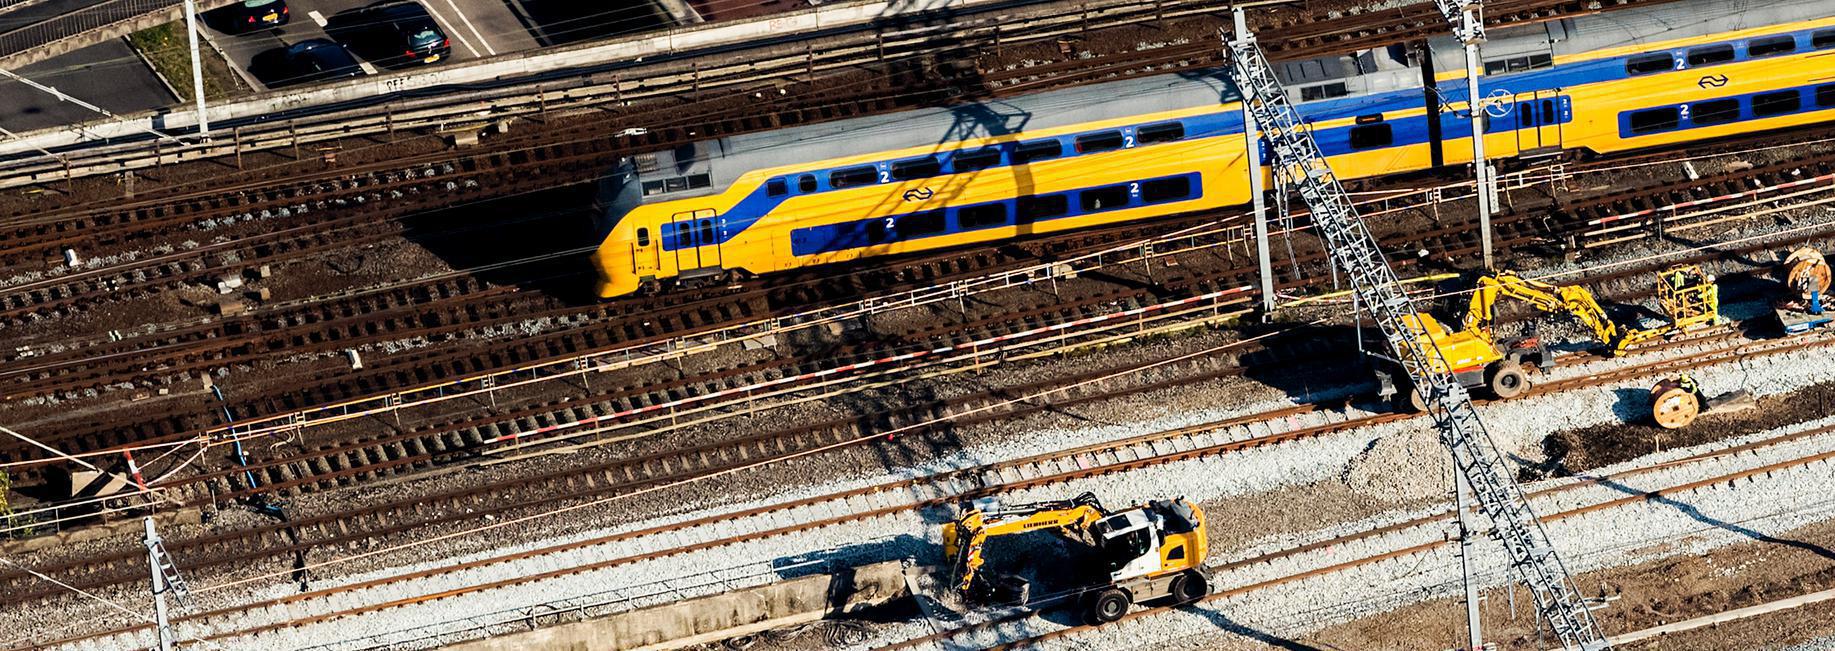 2016-10-21 14:37:19 UTRECHT - Luchtfoto van de spoorvernieuwing rondom treinstation Utrecht Centraal. ANP REMKO DE WAAL